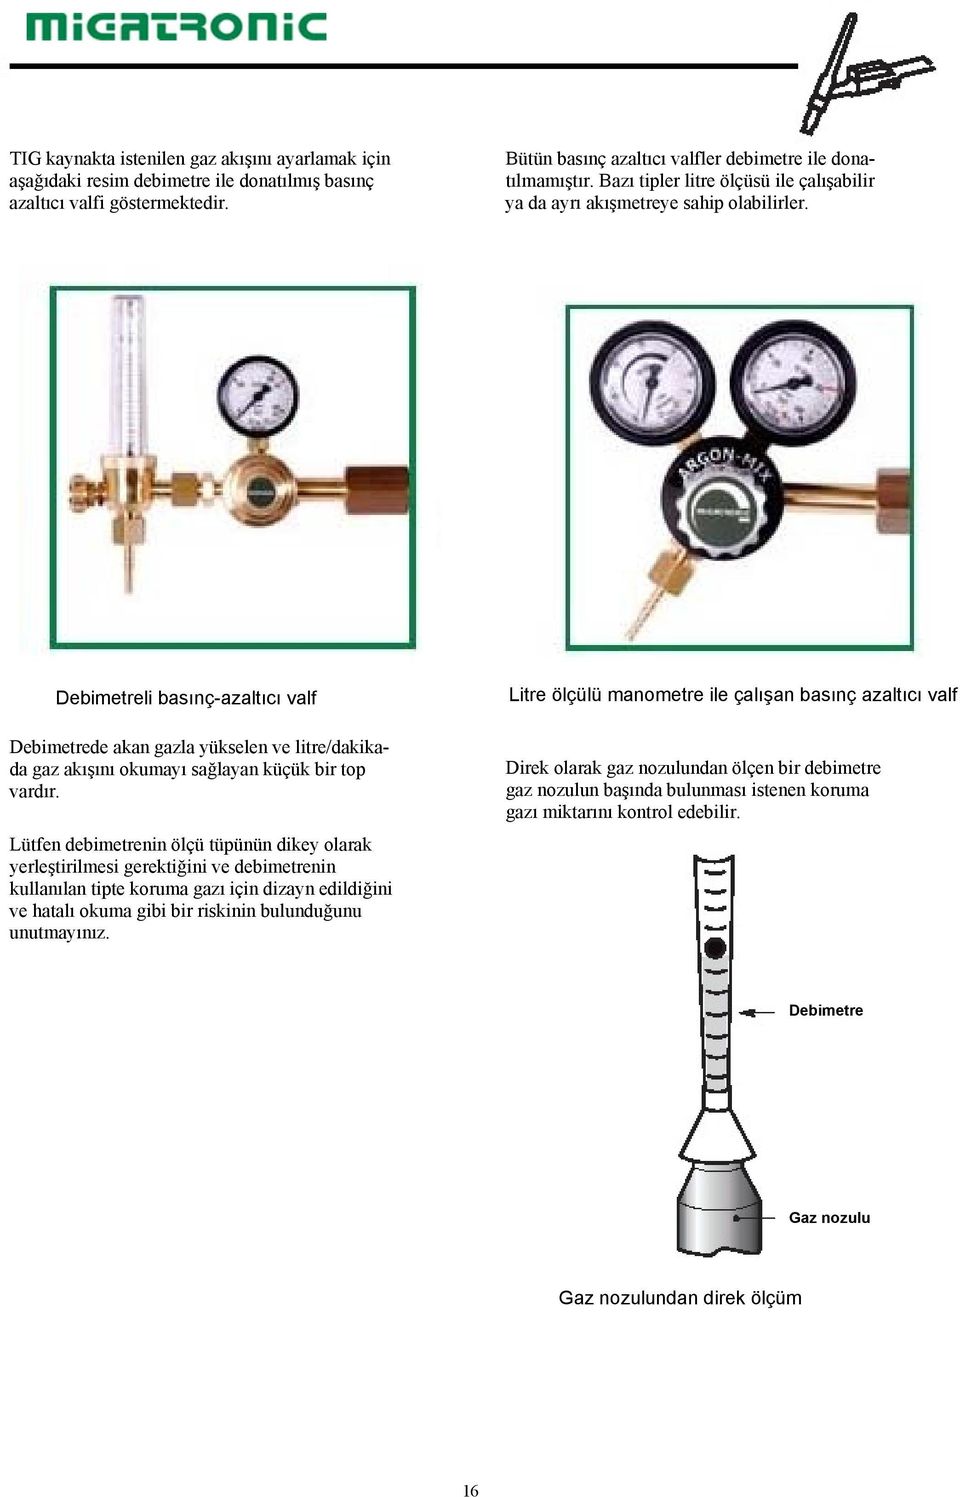 Debimetreli basınç-azaltıcı valf Debimetrede akan gazla yükselen ve litre/dakikada gaz akışını okumayı sağlayan küçük bir top vardır.